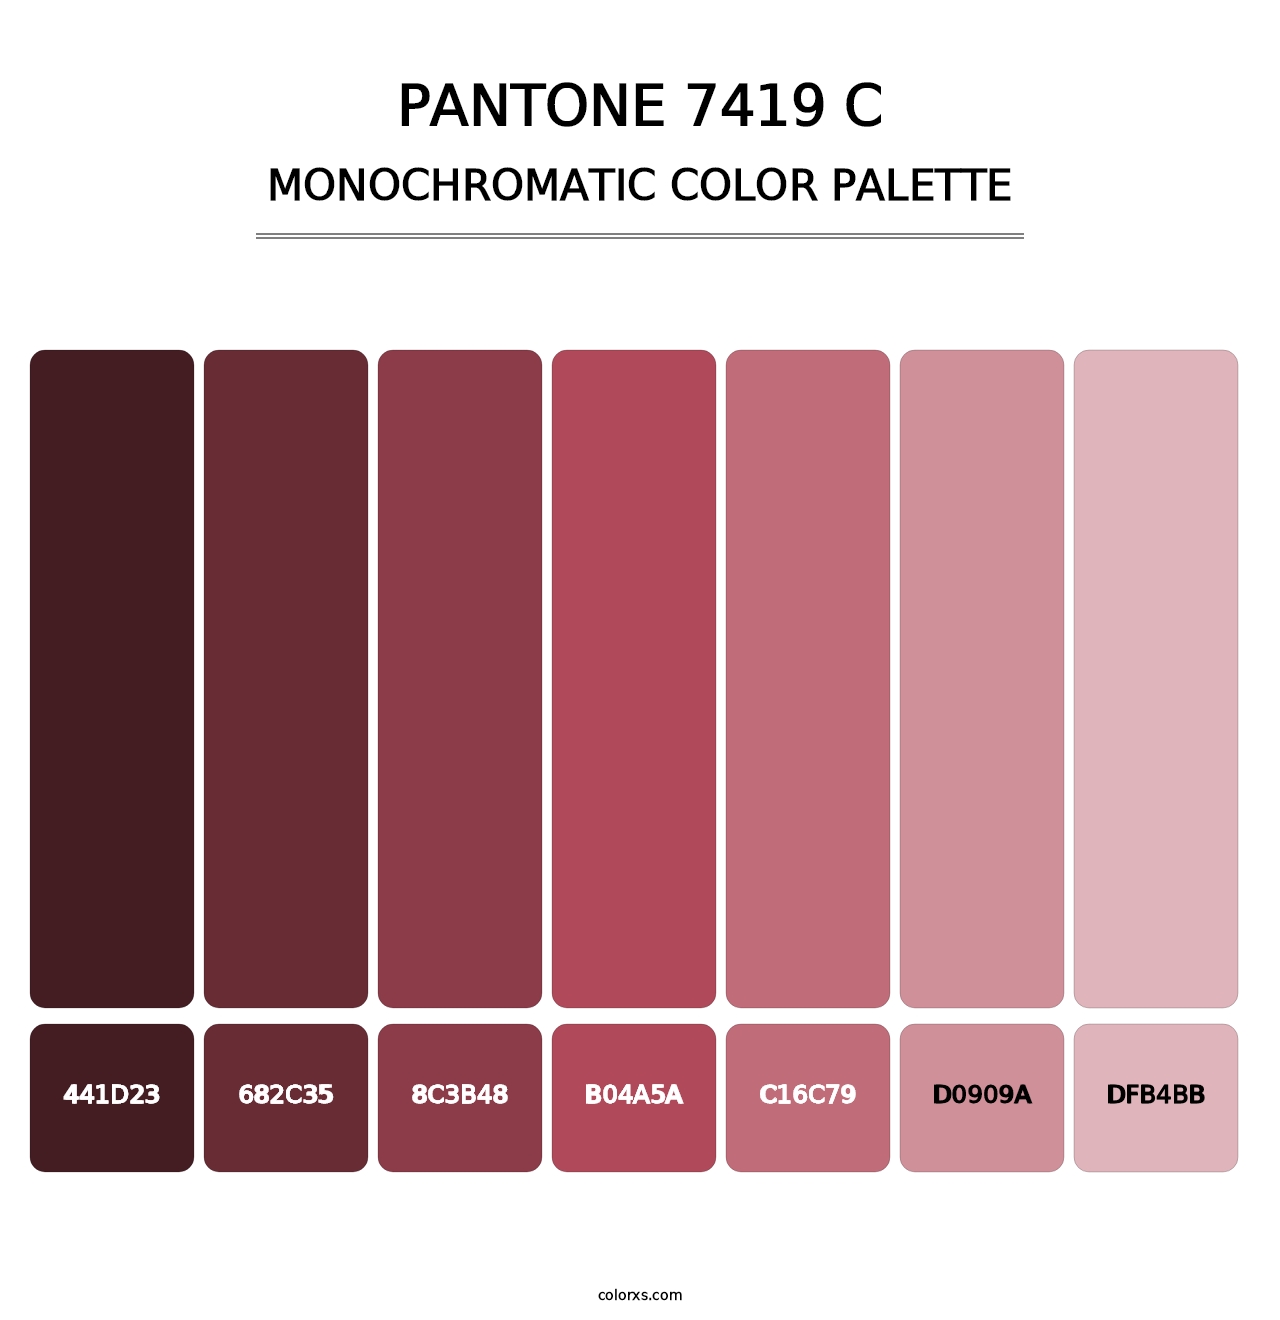 PANTONE 7419 C - Monochromatic Color Palette